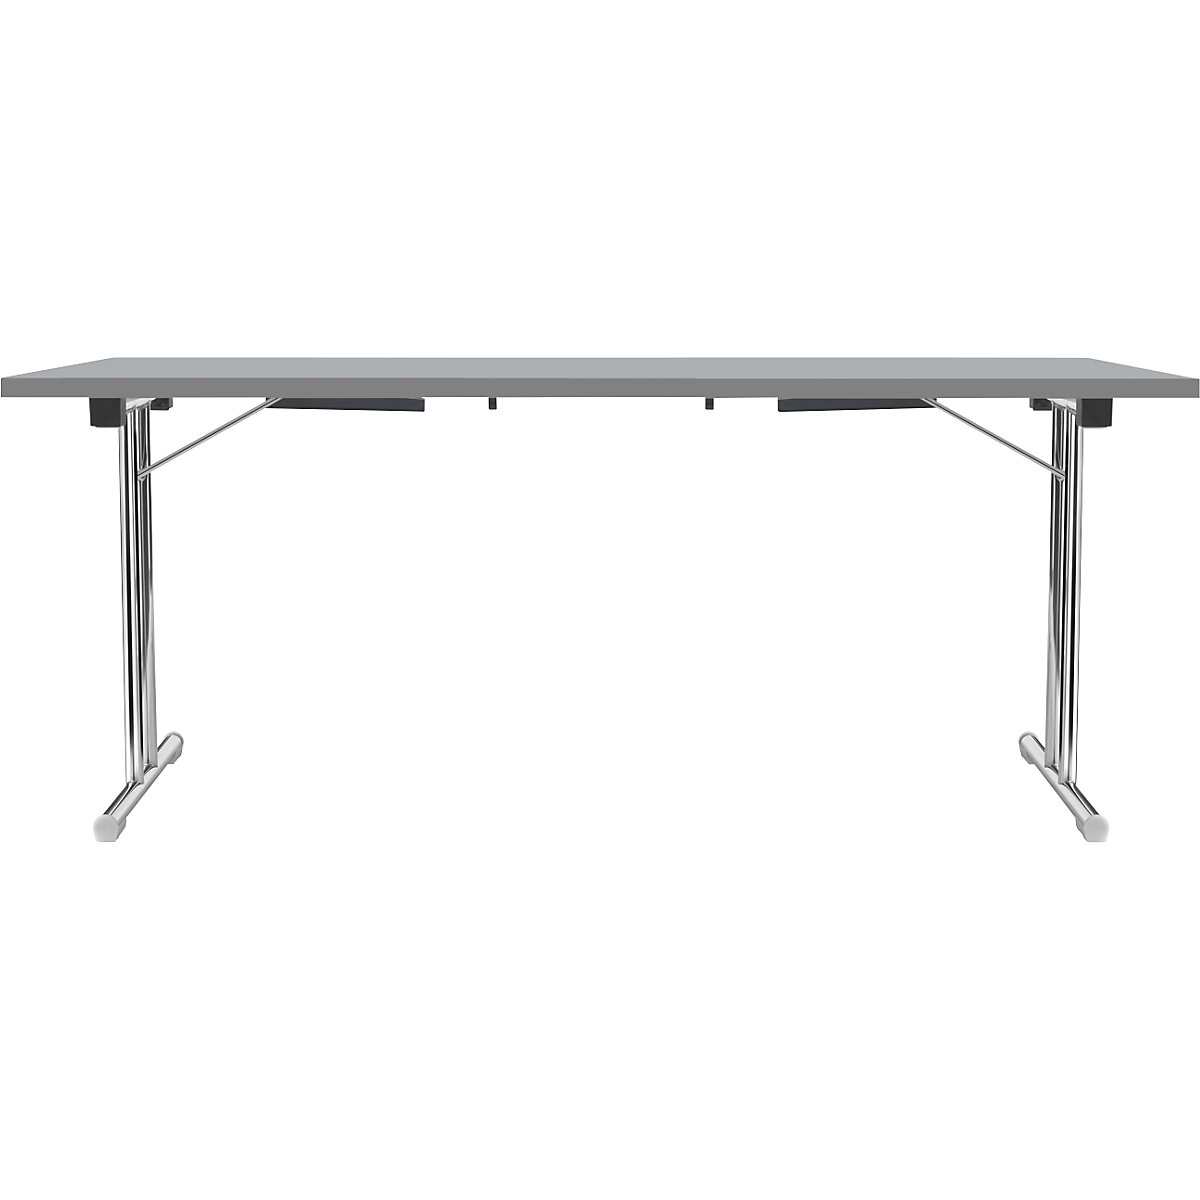 Inklapbare tafel met dubbel T-vormig onderstel, frame van staalbuis, verchroomd, lichtgrijs/antraciet, b x d = 1800 x 800 mm-1